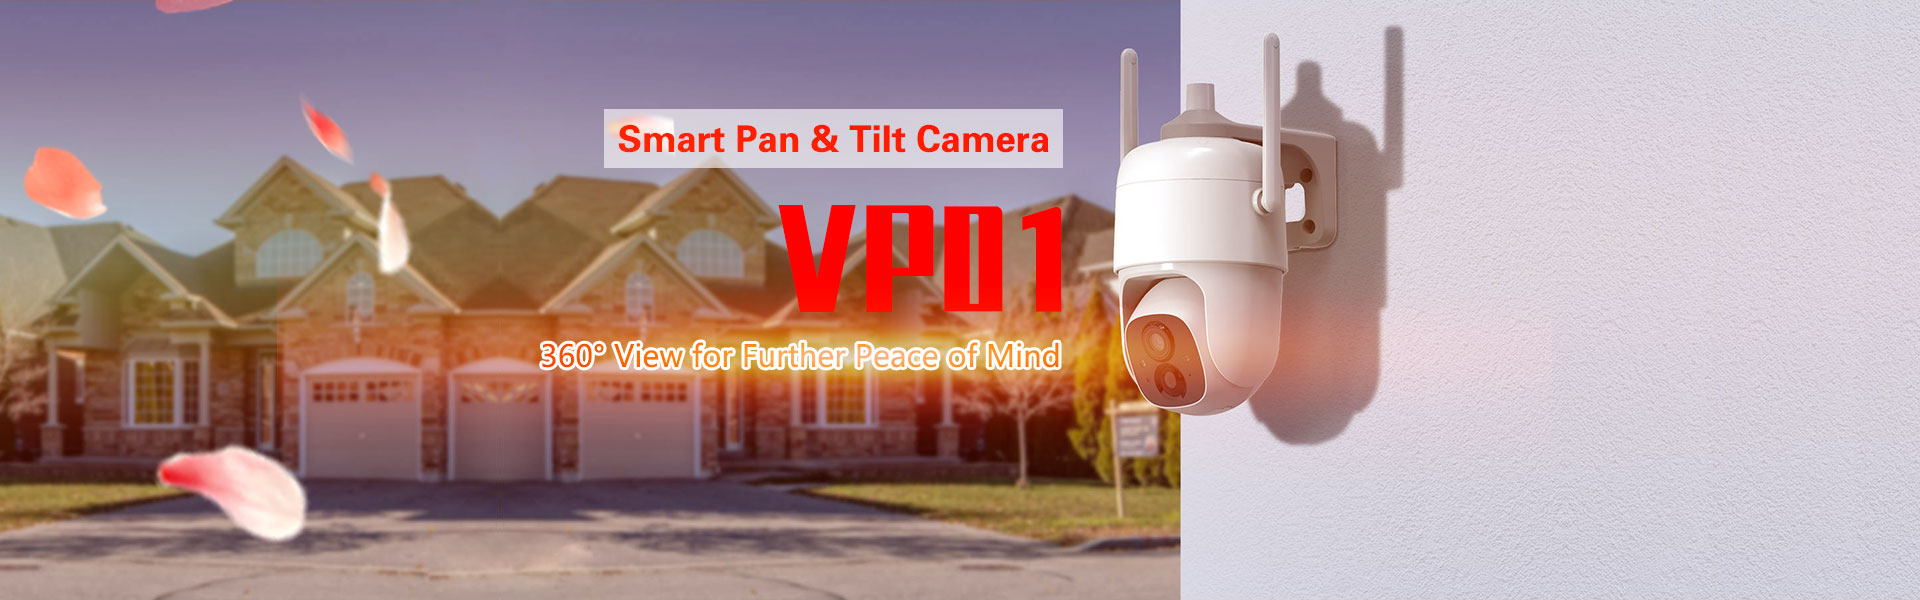 Smart Pan & Tilt Camera - VP01